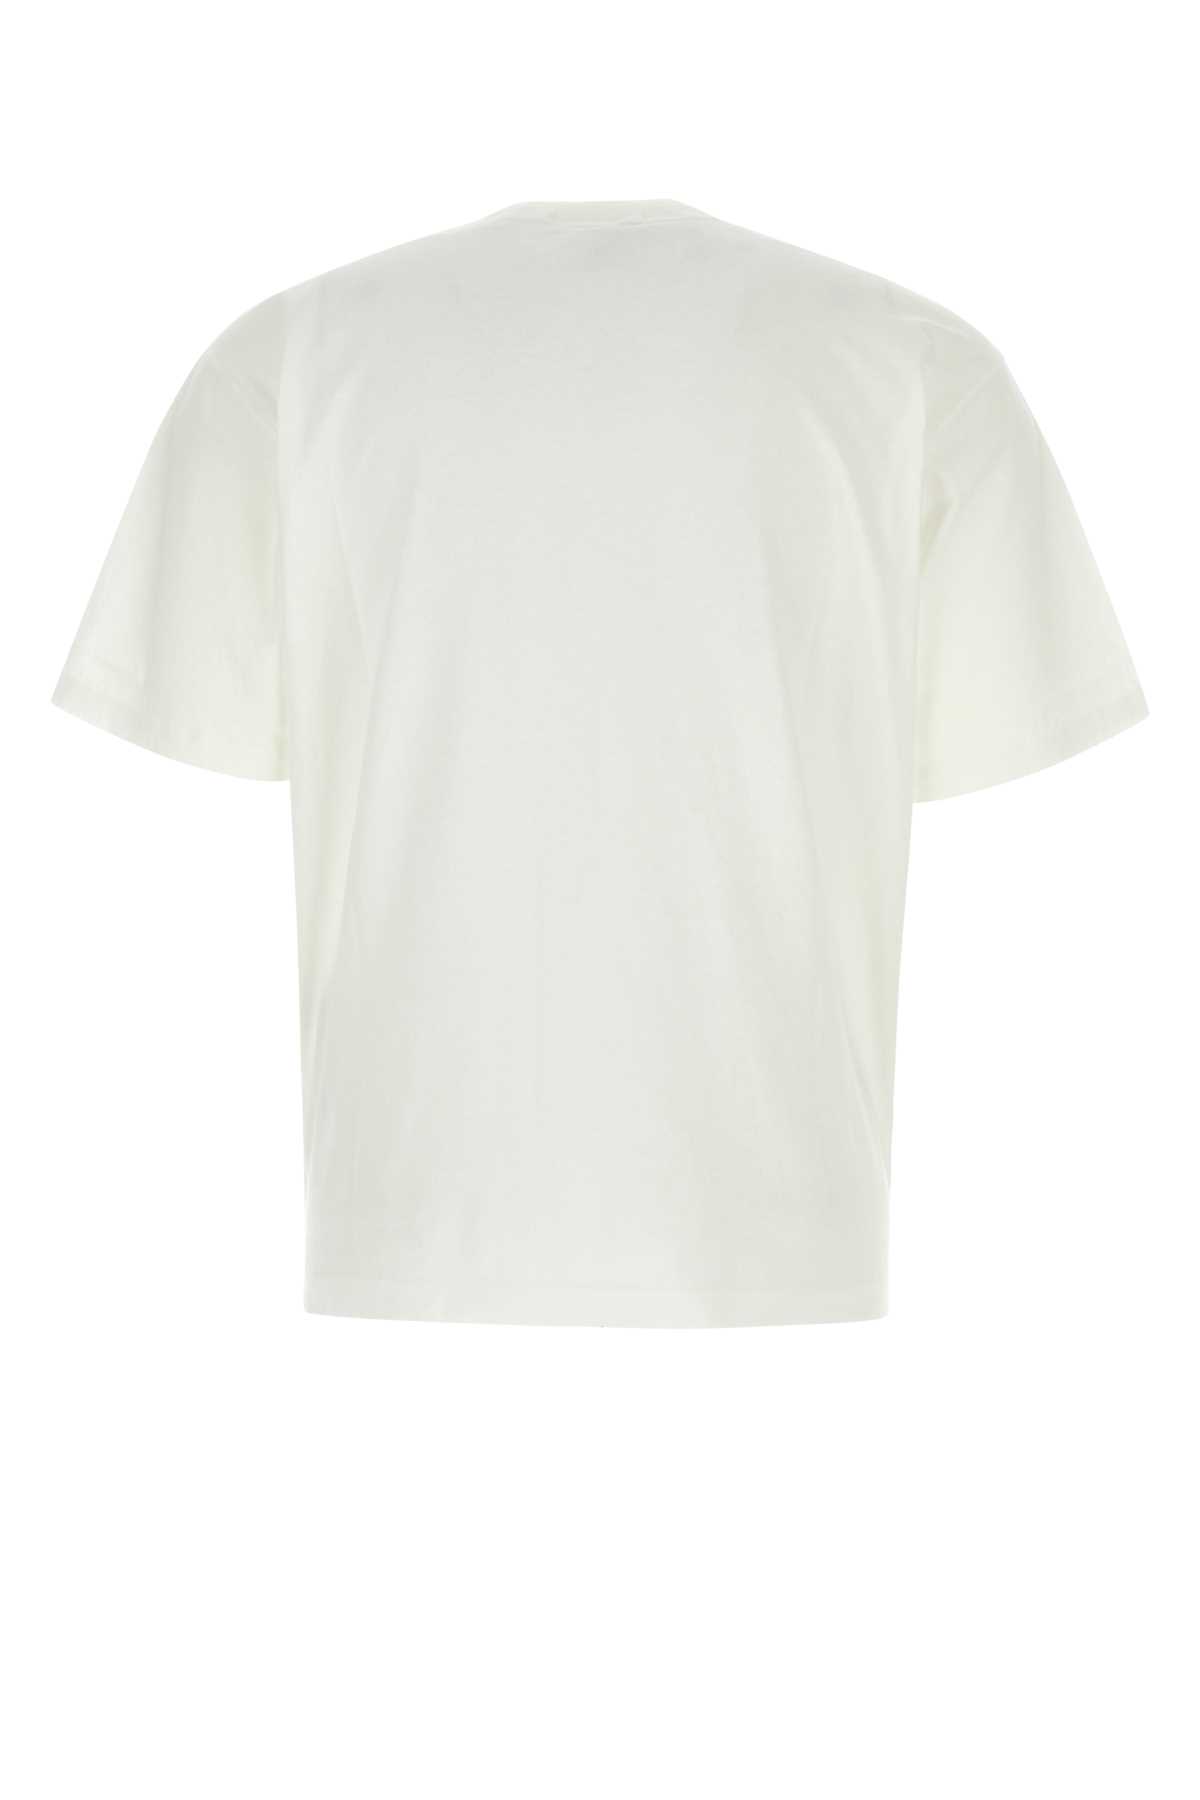 Stone Island White Cotton T-shirt In V0001